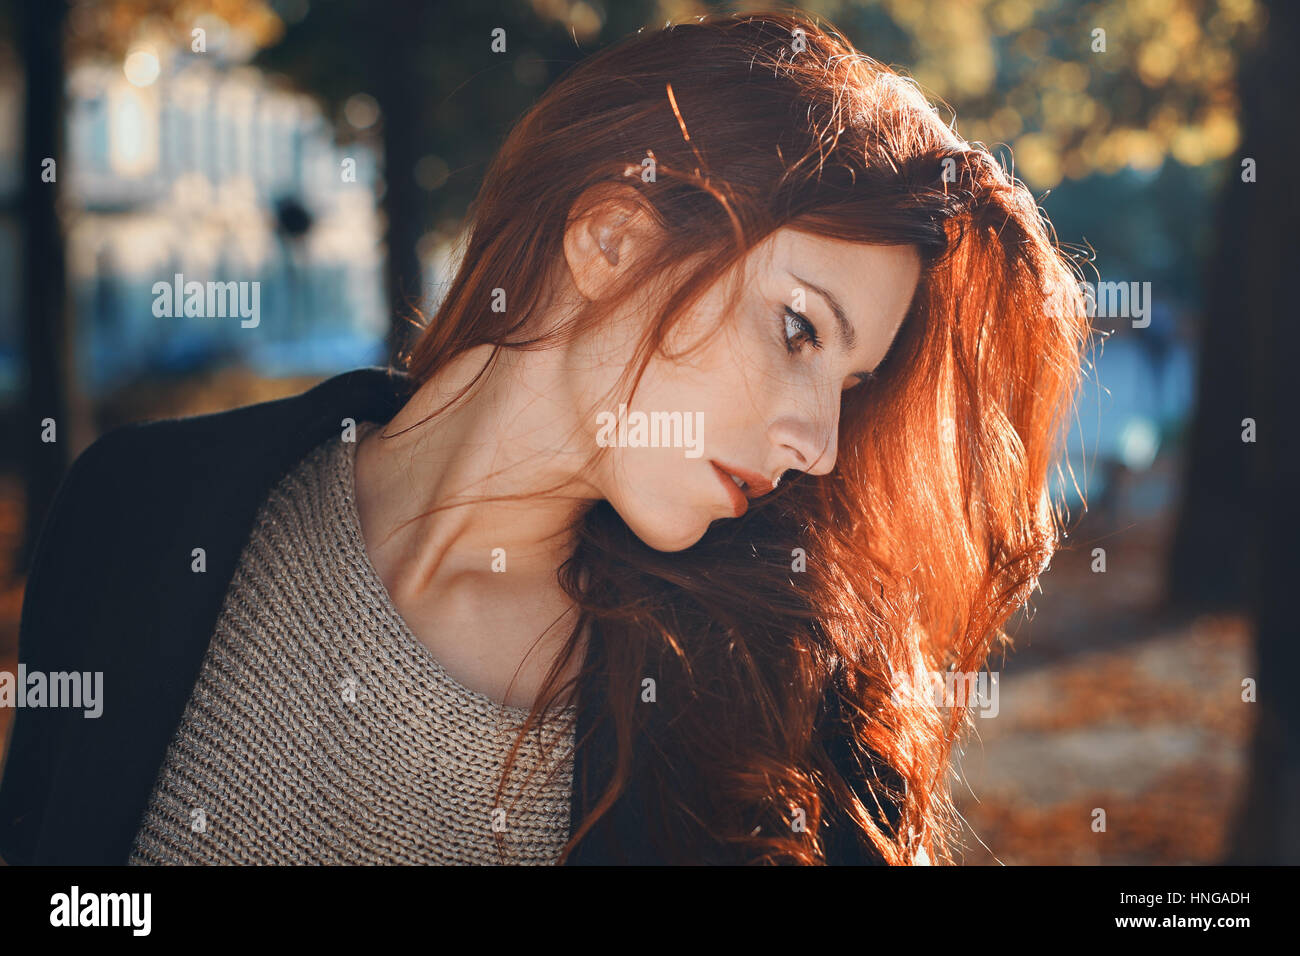 Herbst Porträt einer schönen roten Haaren Frau. Stadt und städtische Stockfoto